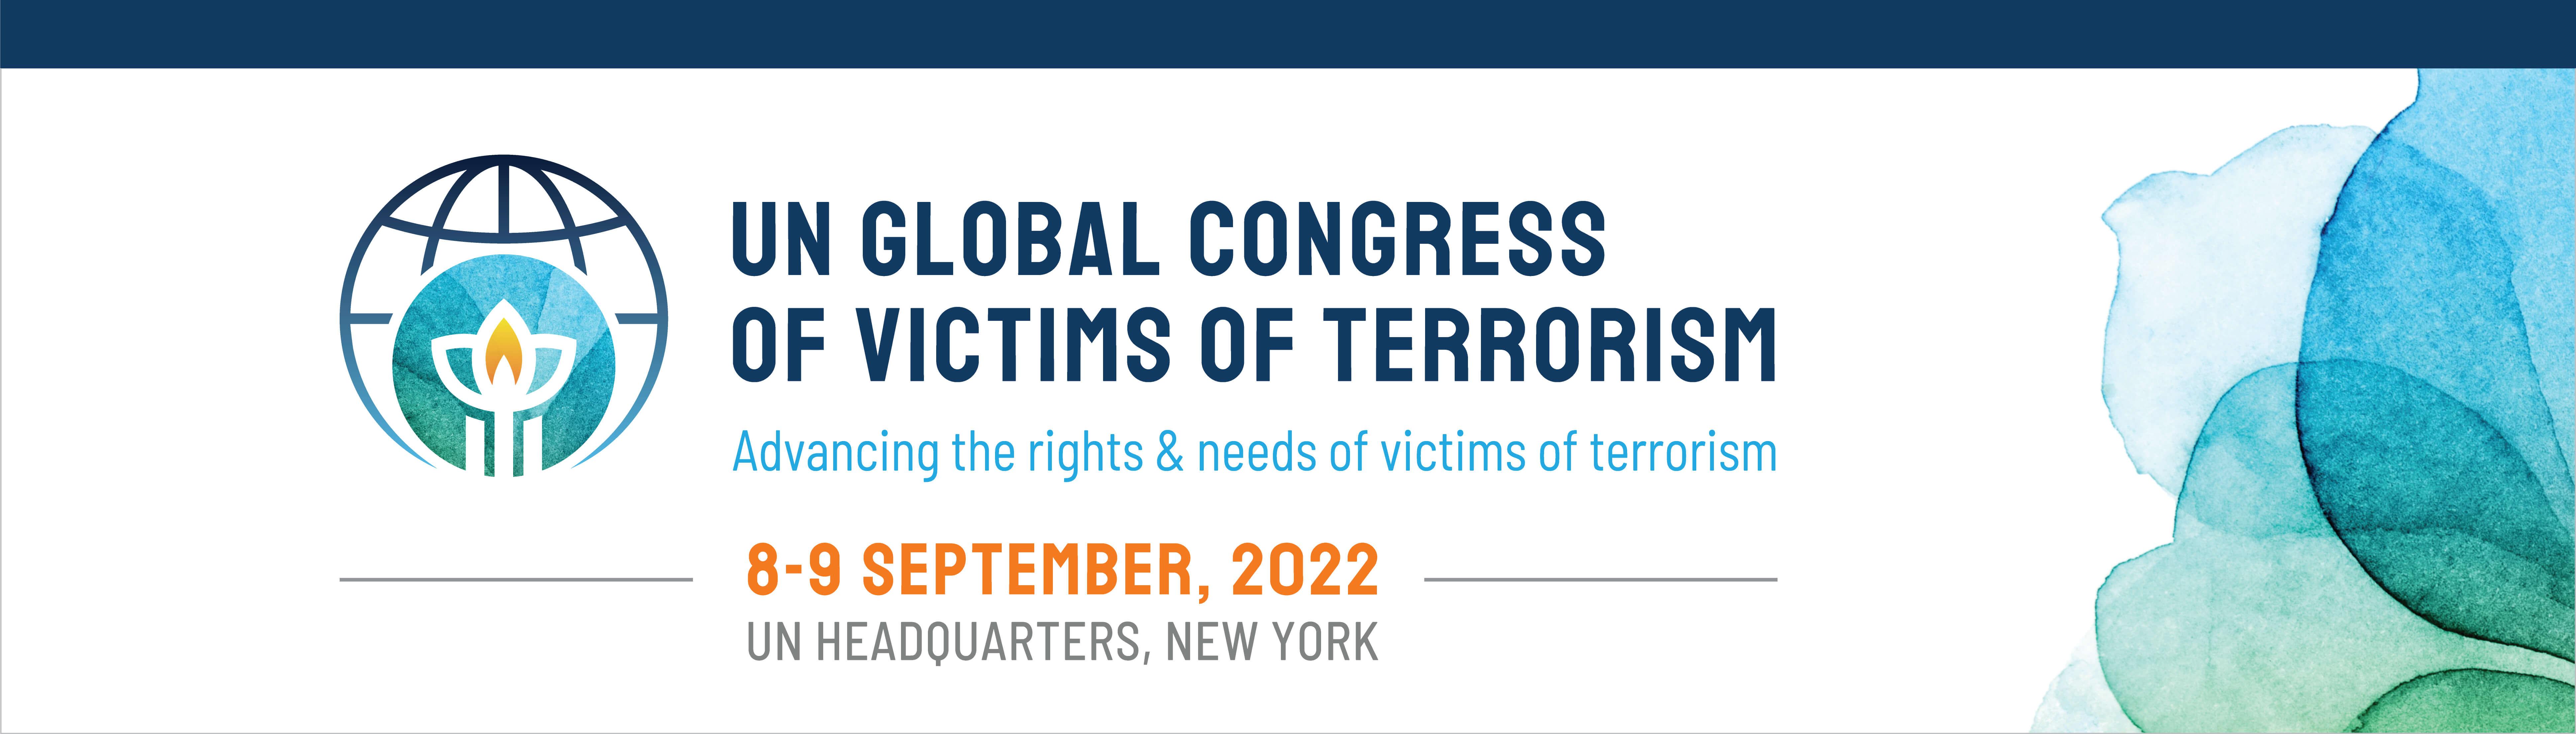 Hội nghị Liên hợp quốc toàn cầu về nạn khủng bố 2022: Đây là một sự kiện lịch sử quan trọng trong cuộc chiến chống lại khủng bố, giúp thể hiện sự đoàn kết và những nỗ lực của cộng đồng quốc tế. Hãy cùng nhau xem hình ảnh tại hội nghị Liên hợp quốc để hiểu rõ hơn về tình hình khủng bố thế giới.